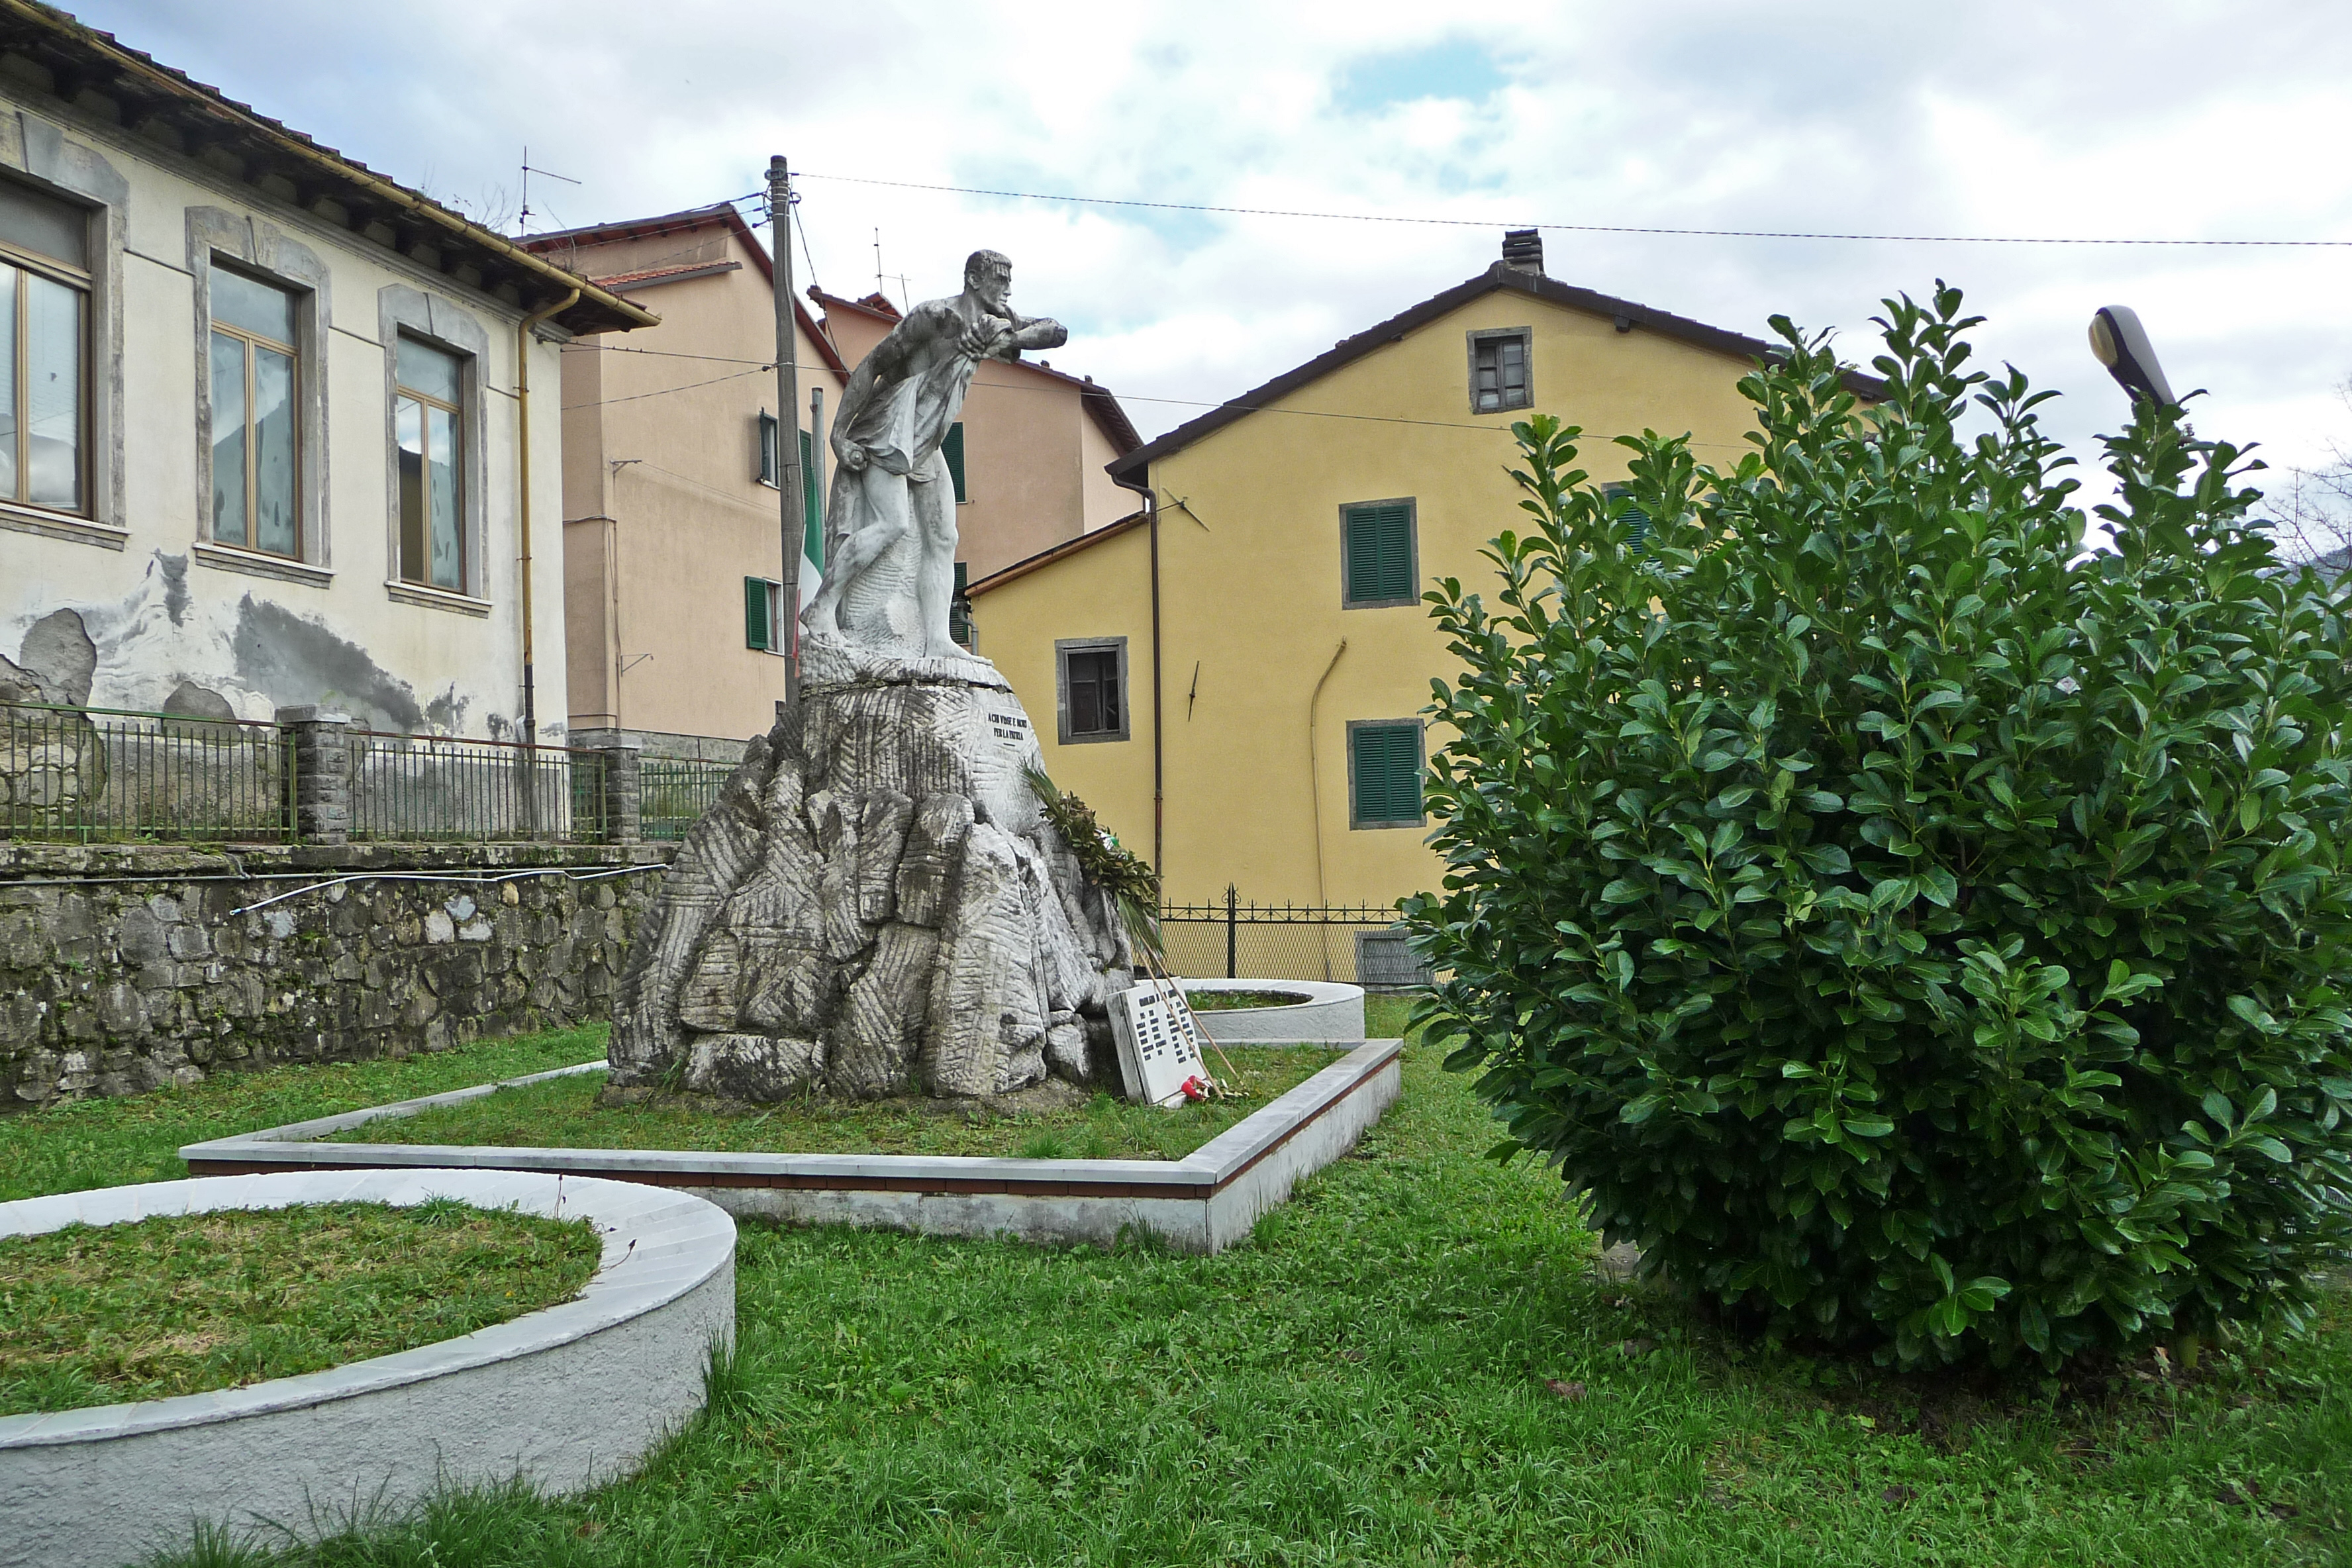 Parco della rimembranza di Gramolazzo (parco, commemorativo/ ai caduti della prima guerra mondiale) - Minucciano (LU) 